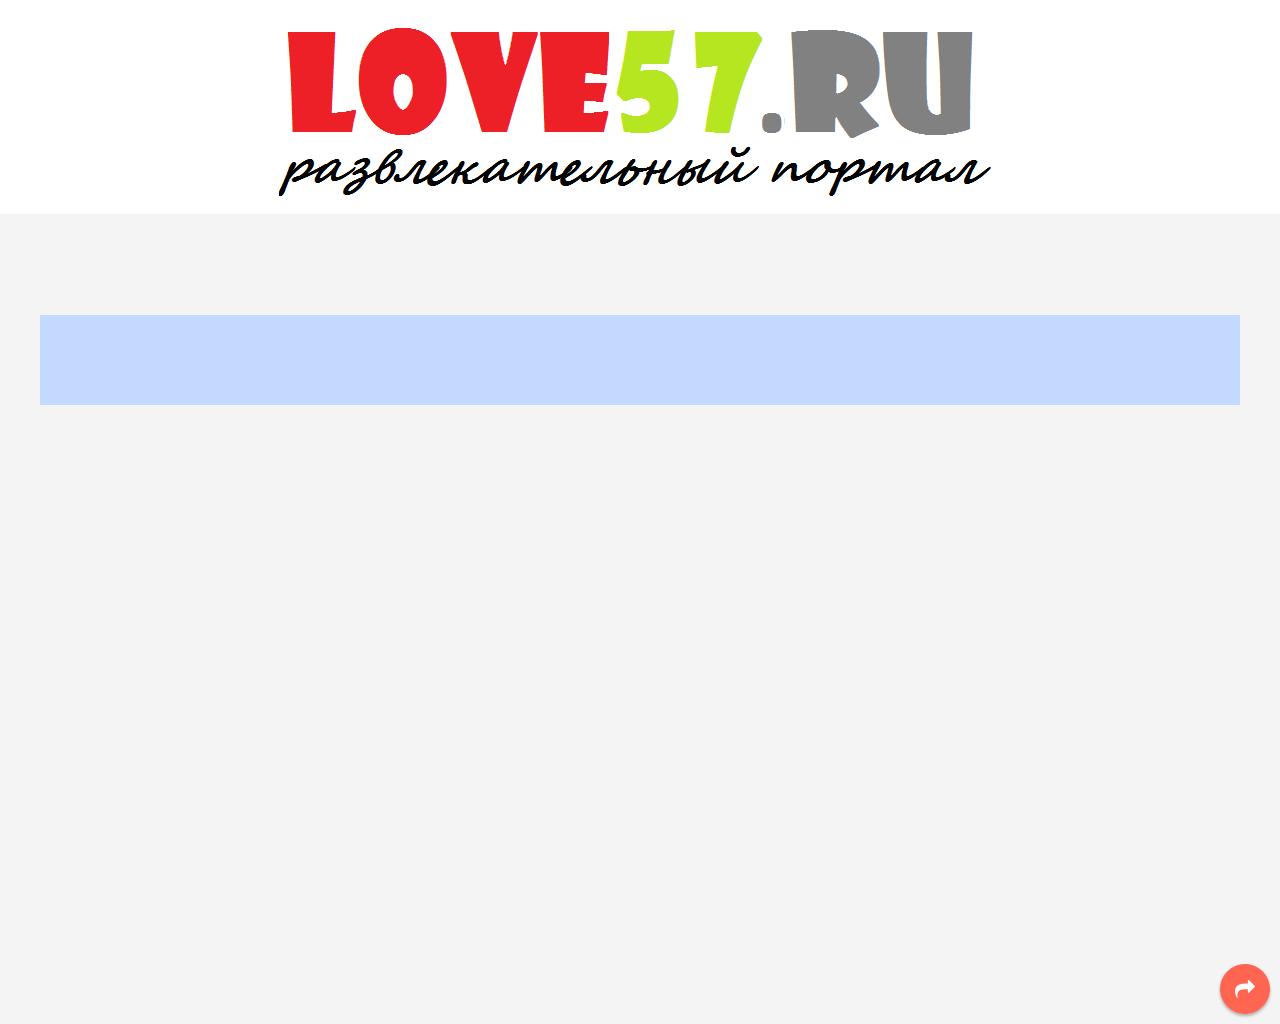 Изображение сайта love57.ru в разрешении 1280x1024